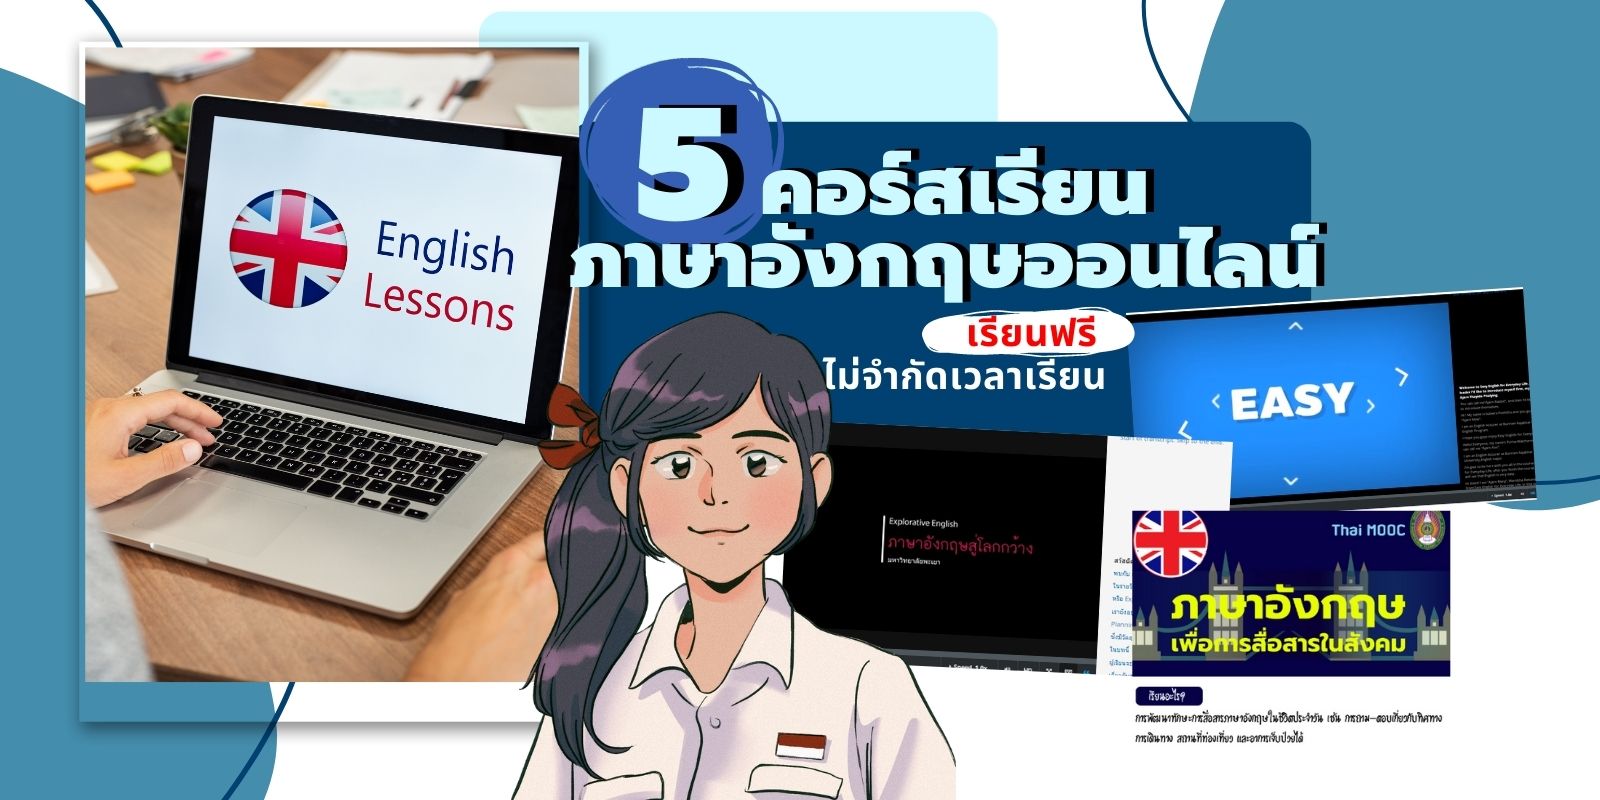 5 คอร์สเรียนภาษาอังกฤษออนไลน์ เรียนฟรี ไม่จำกัดเวลาเรียน